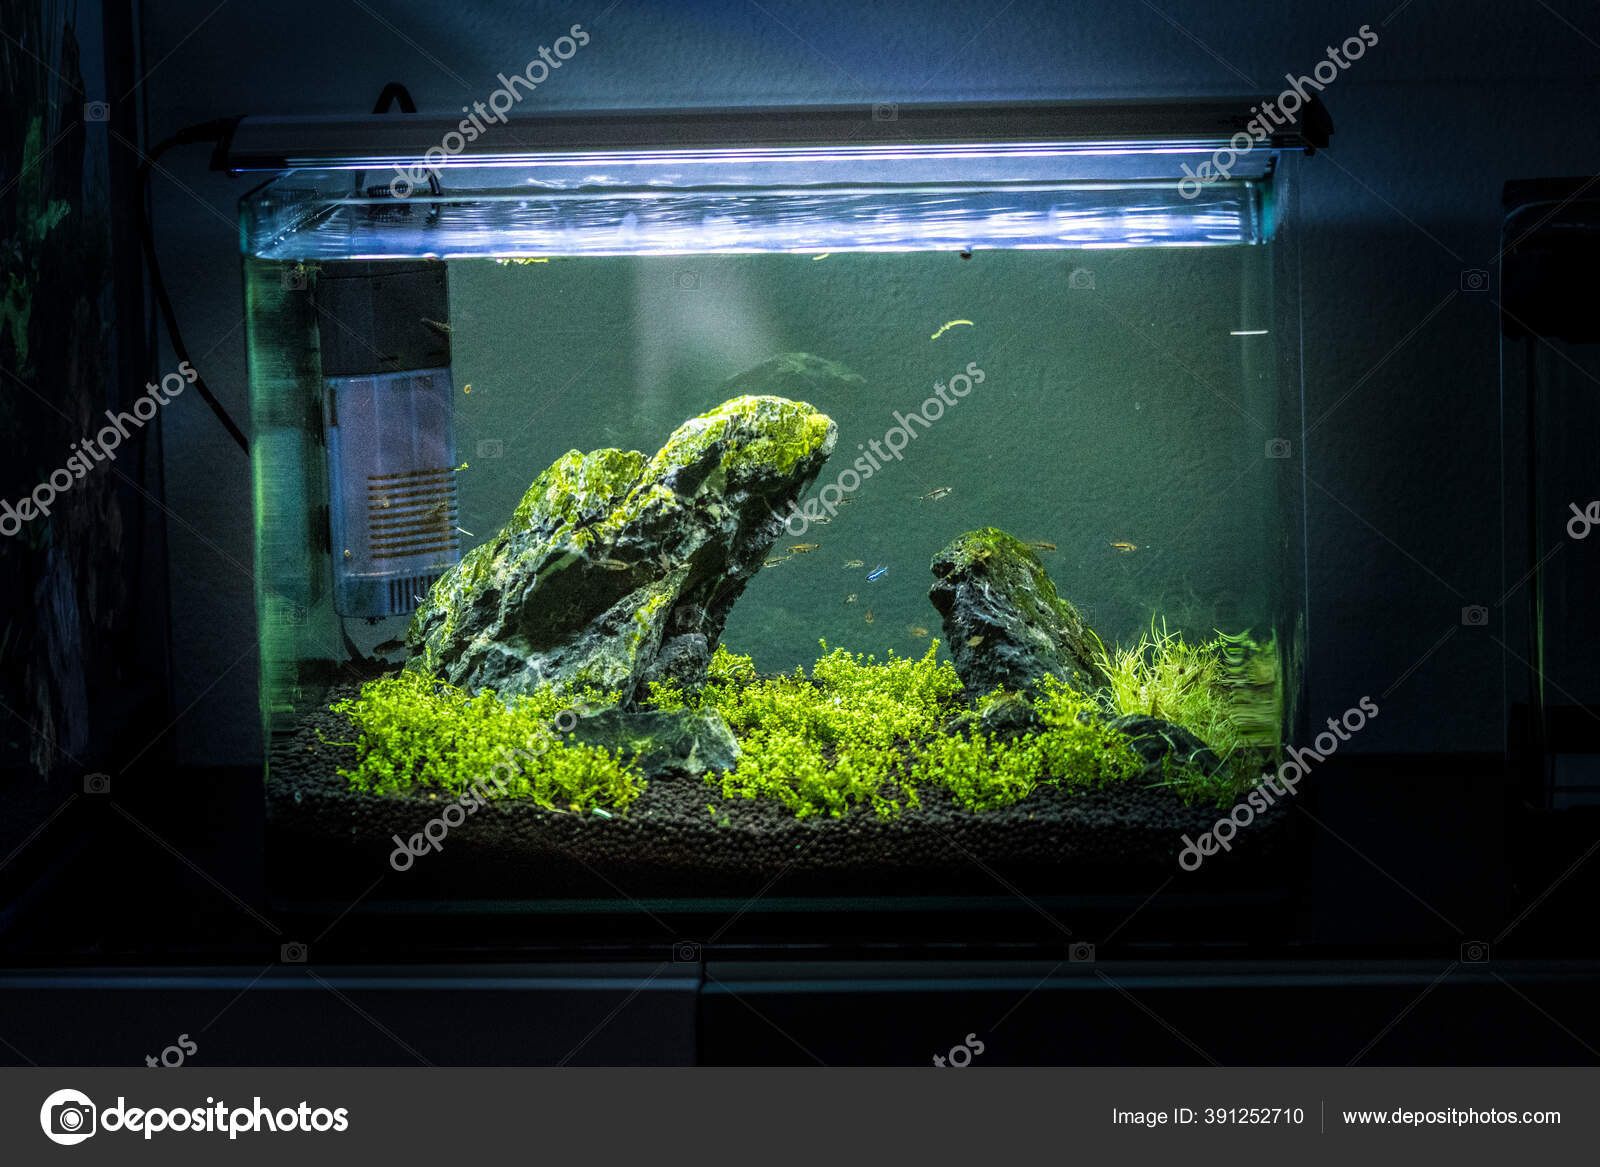 Freshwater Small Planted Aquarium Stock Photo ©andrejjakubik 391252710